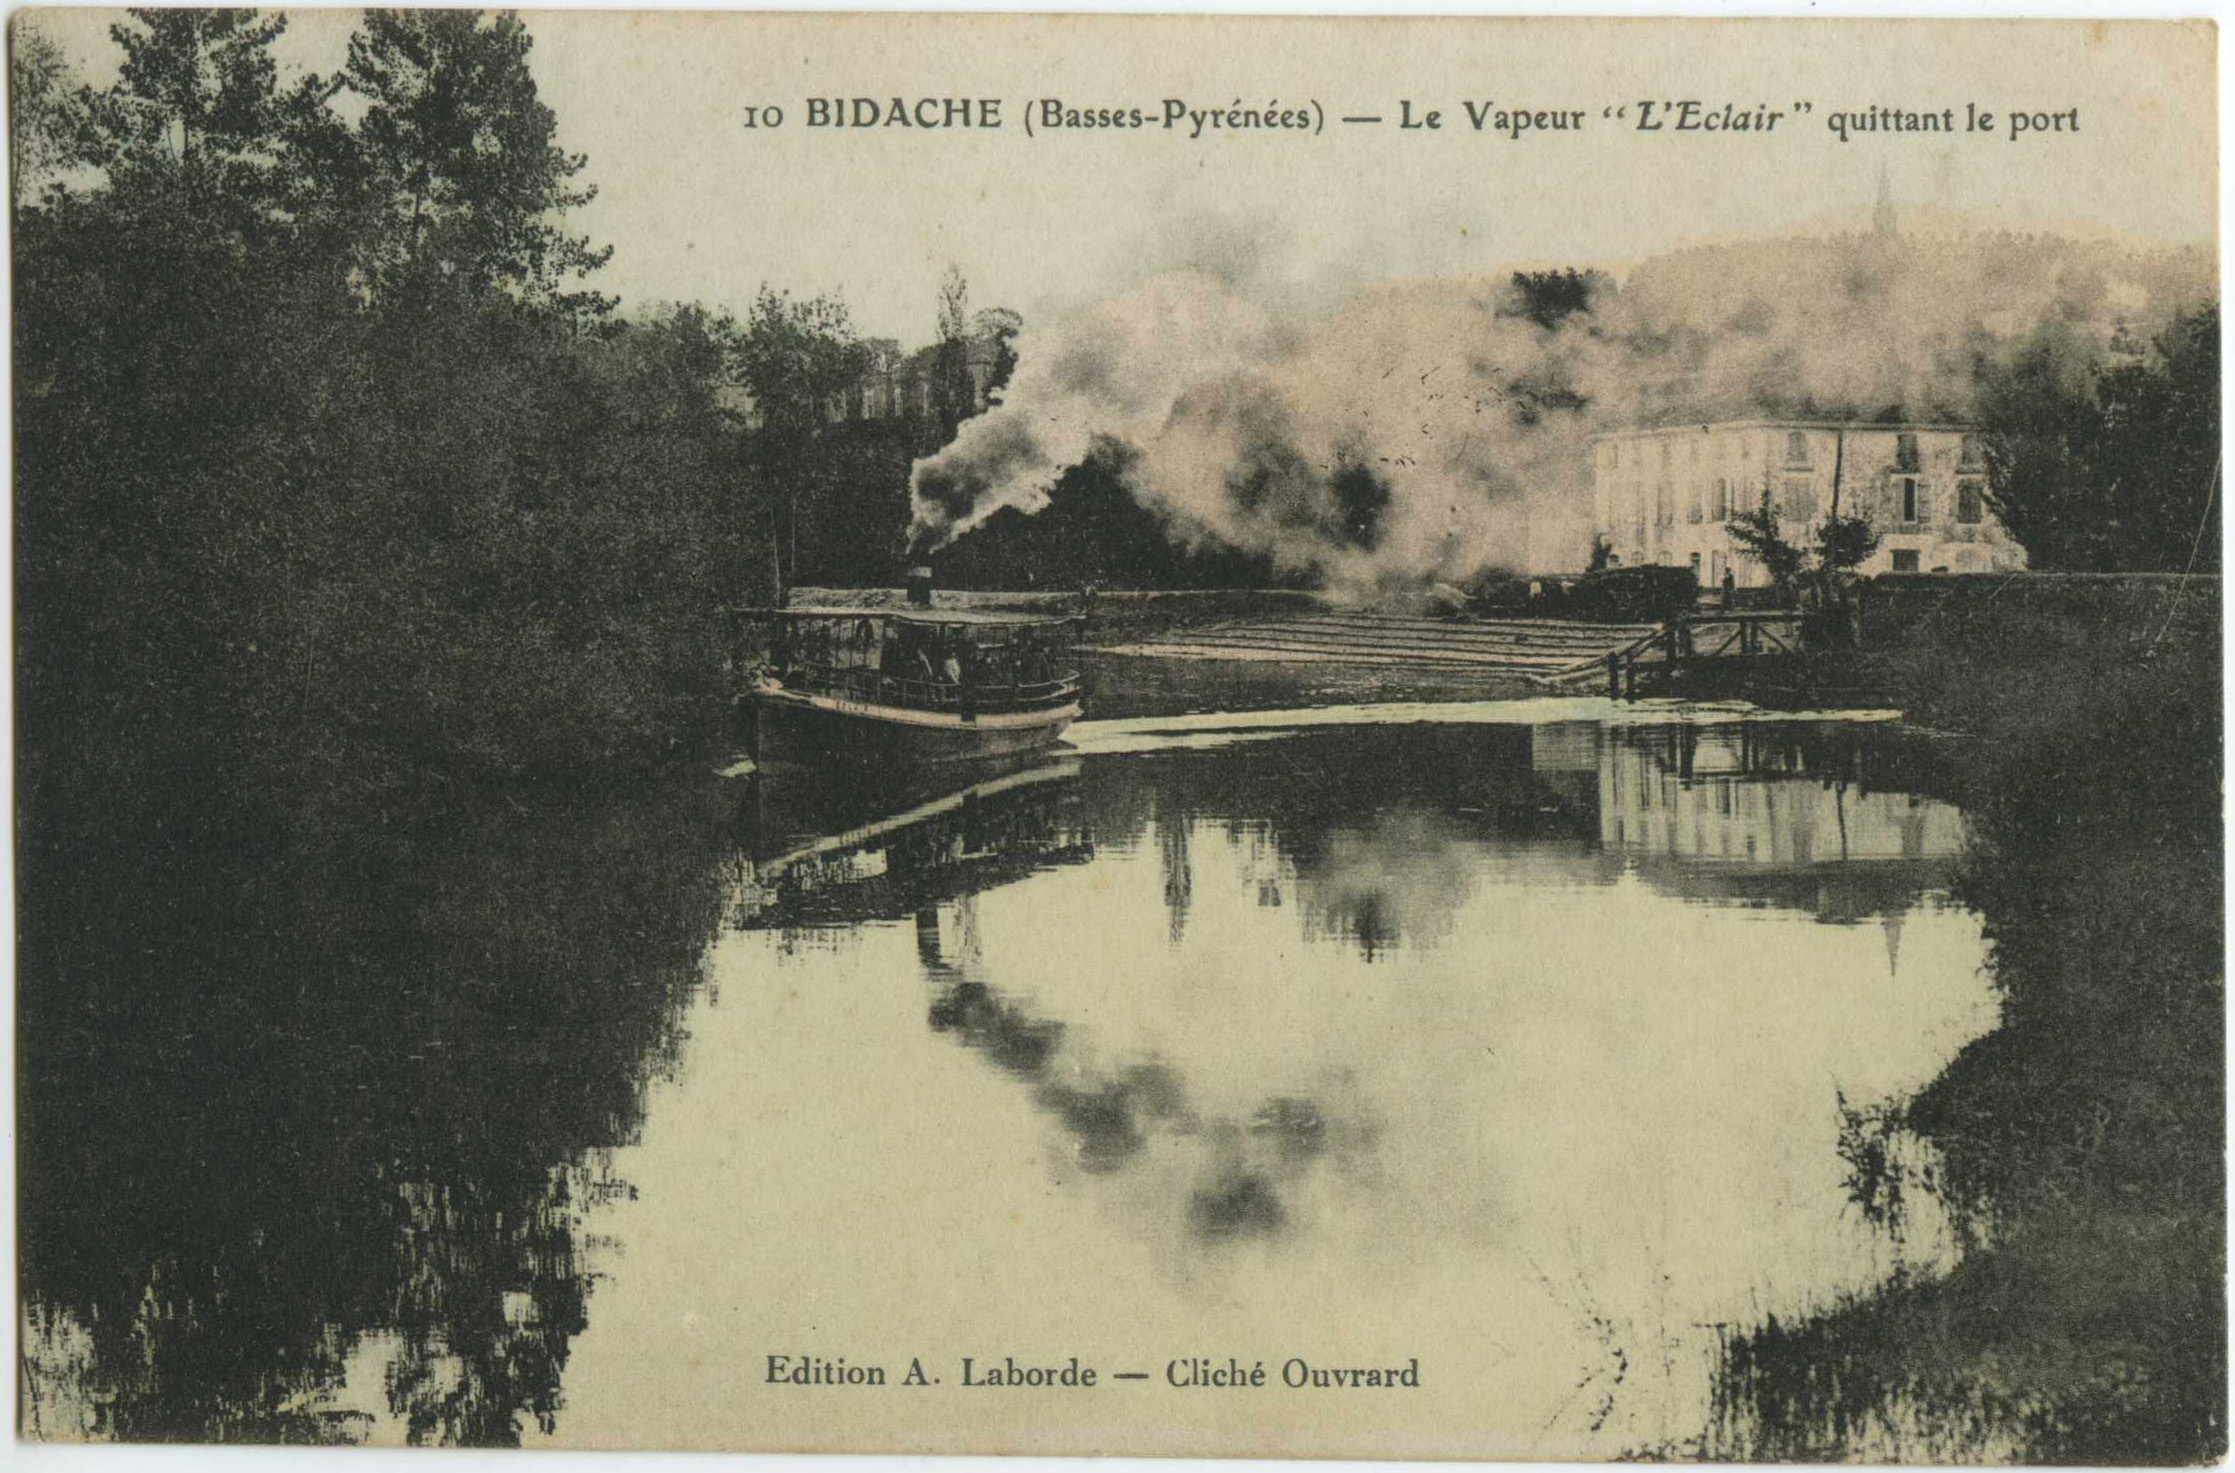 Bidache - Le Vapeur "L'Eclair" quittant le port